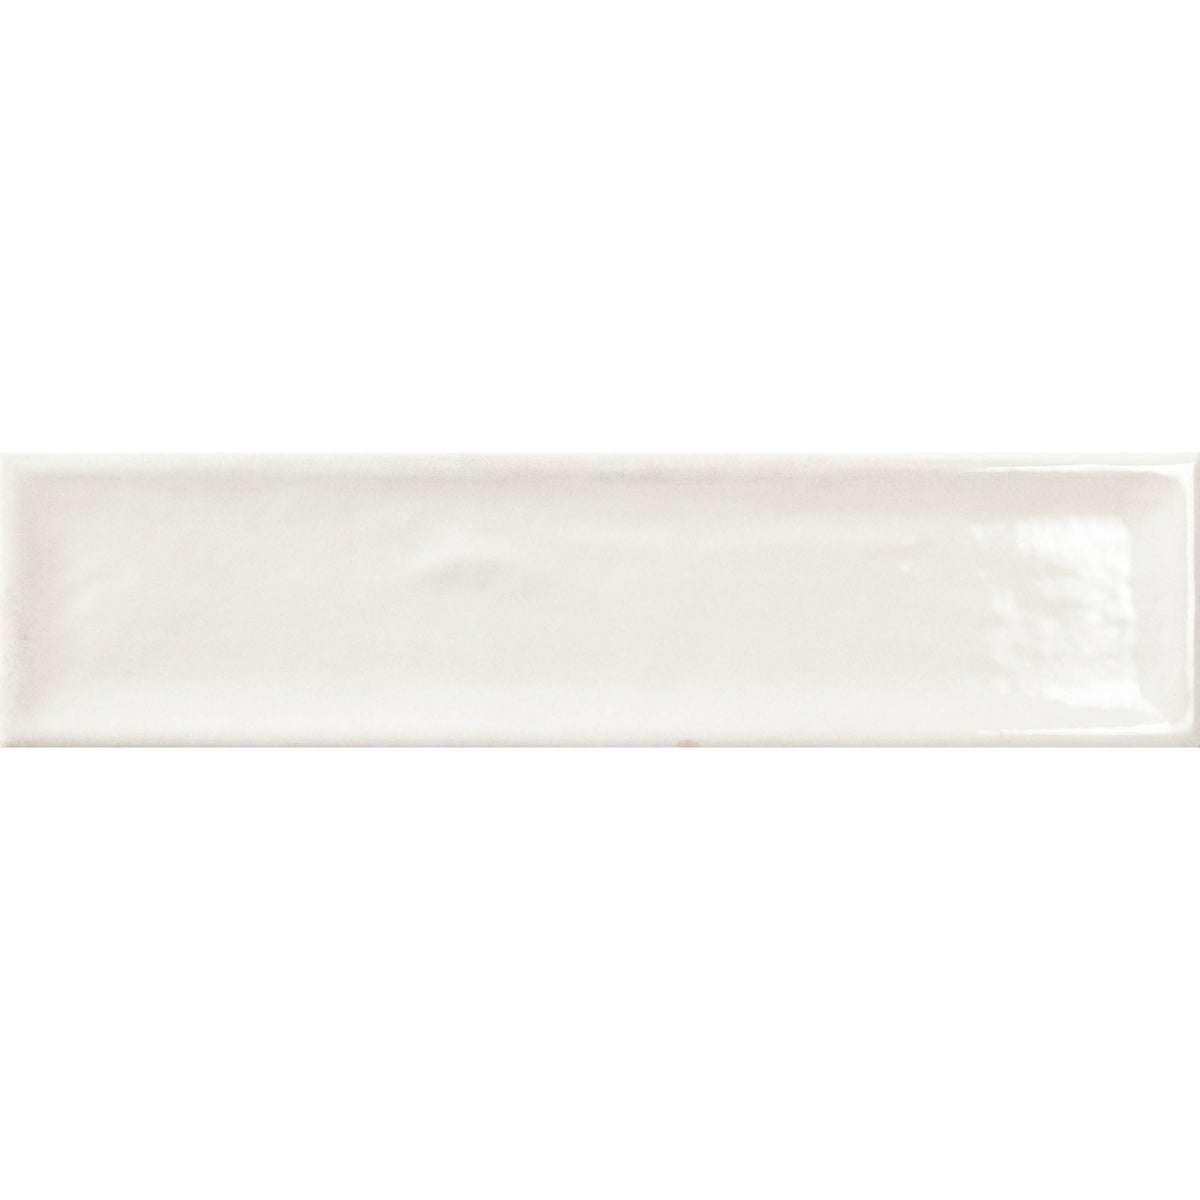 Bärwolf Licata Bianco 30x7,5 cm Ceramic KE-20001 einfach und bequem —